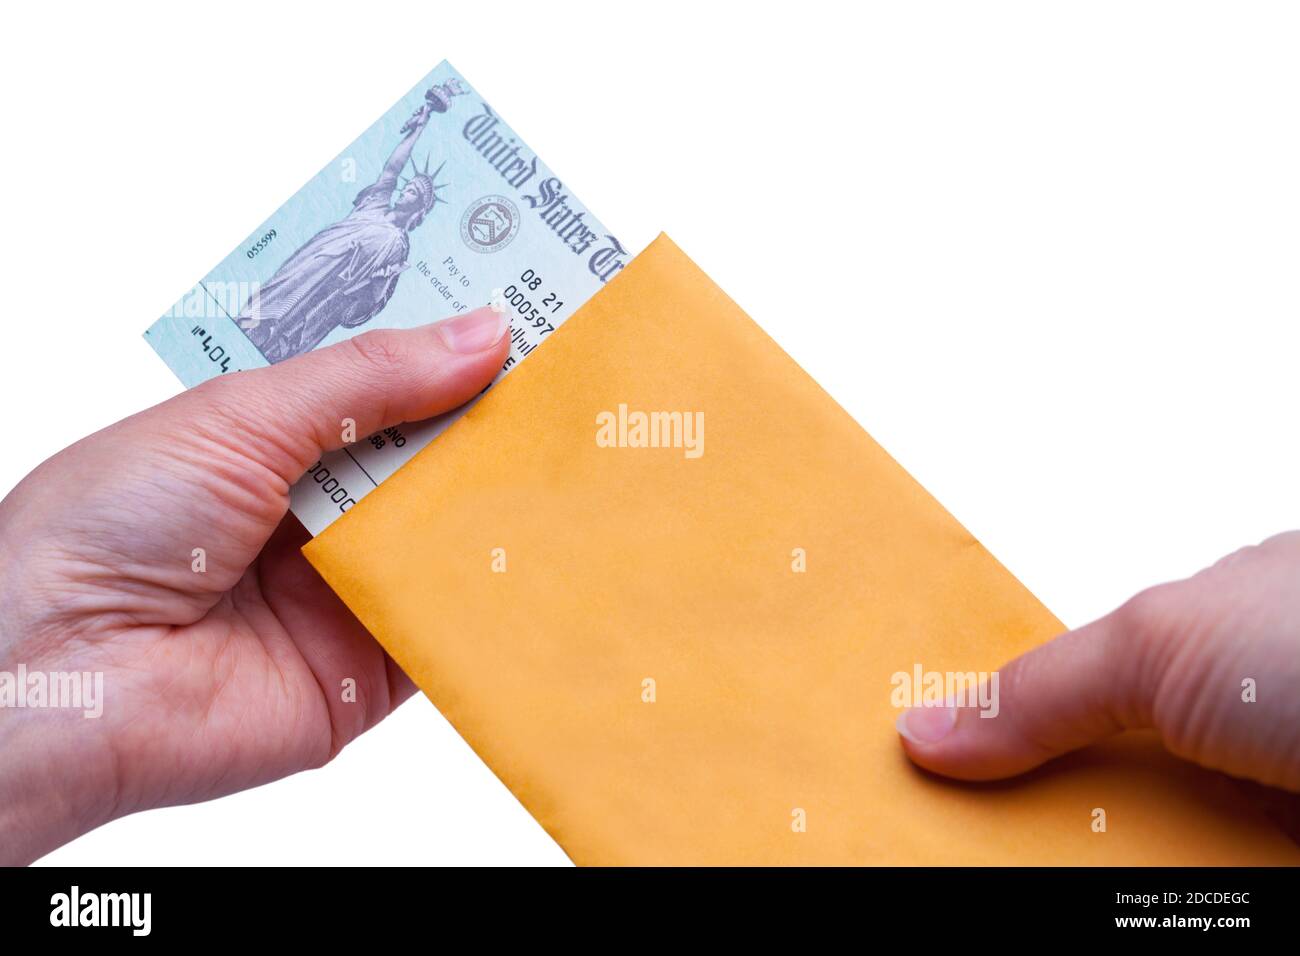 Zwei Hände mit einem Umschlag, der einen Steuerrückerstattungsscheck auszieht. Stockfoto